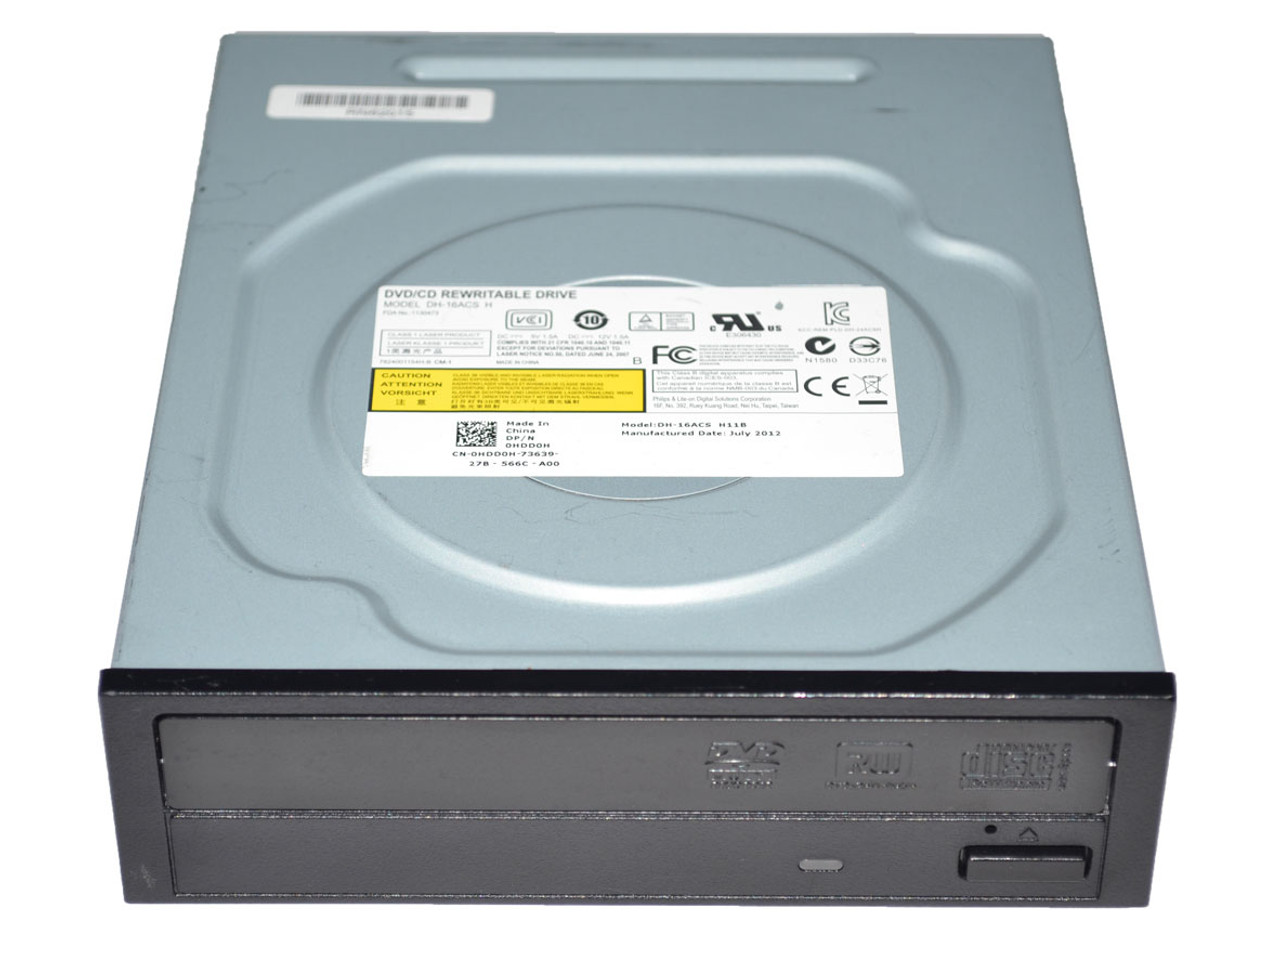 Dell CJ213 - 16X DVD Rom Drive - CPU Medics